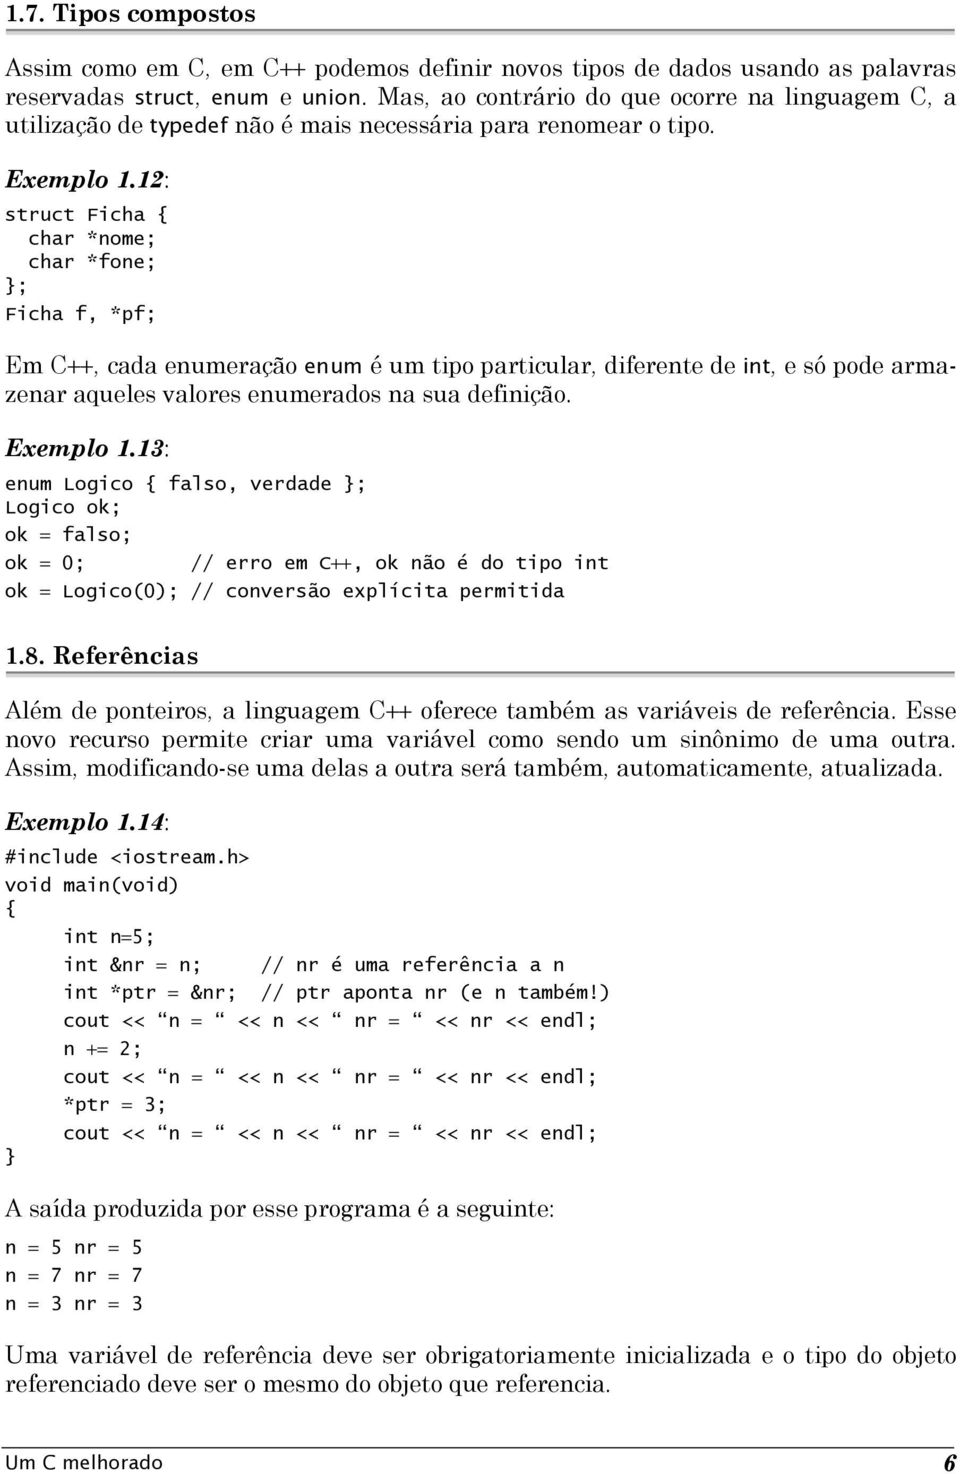 12: struct Ficha char *nome; char *fone; ; Ficha f, *pf; Em C++, cada enumeração enum é um tipo particular, diferente de int, e só pode armazenar aqueles valores enumerados na sua definição.